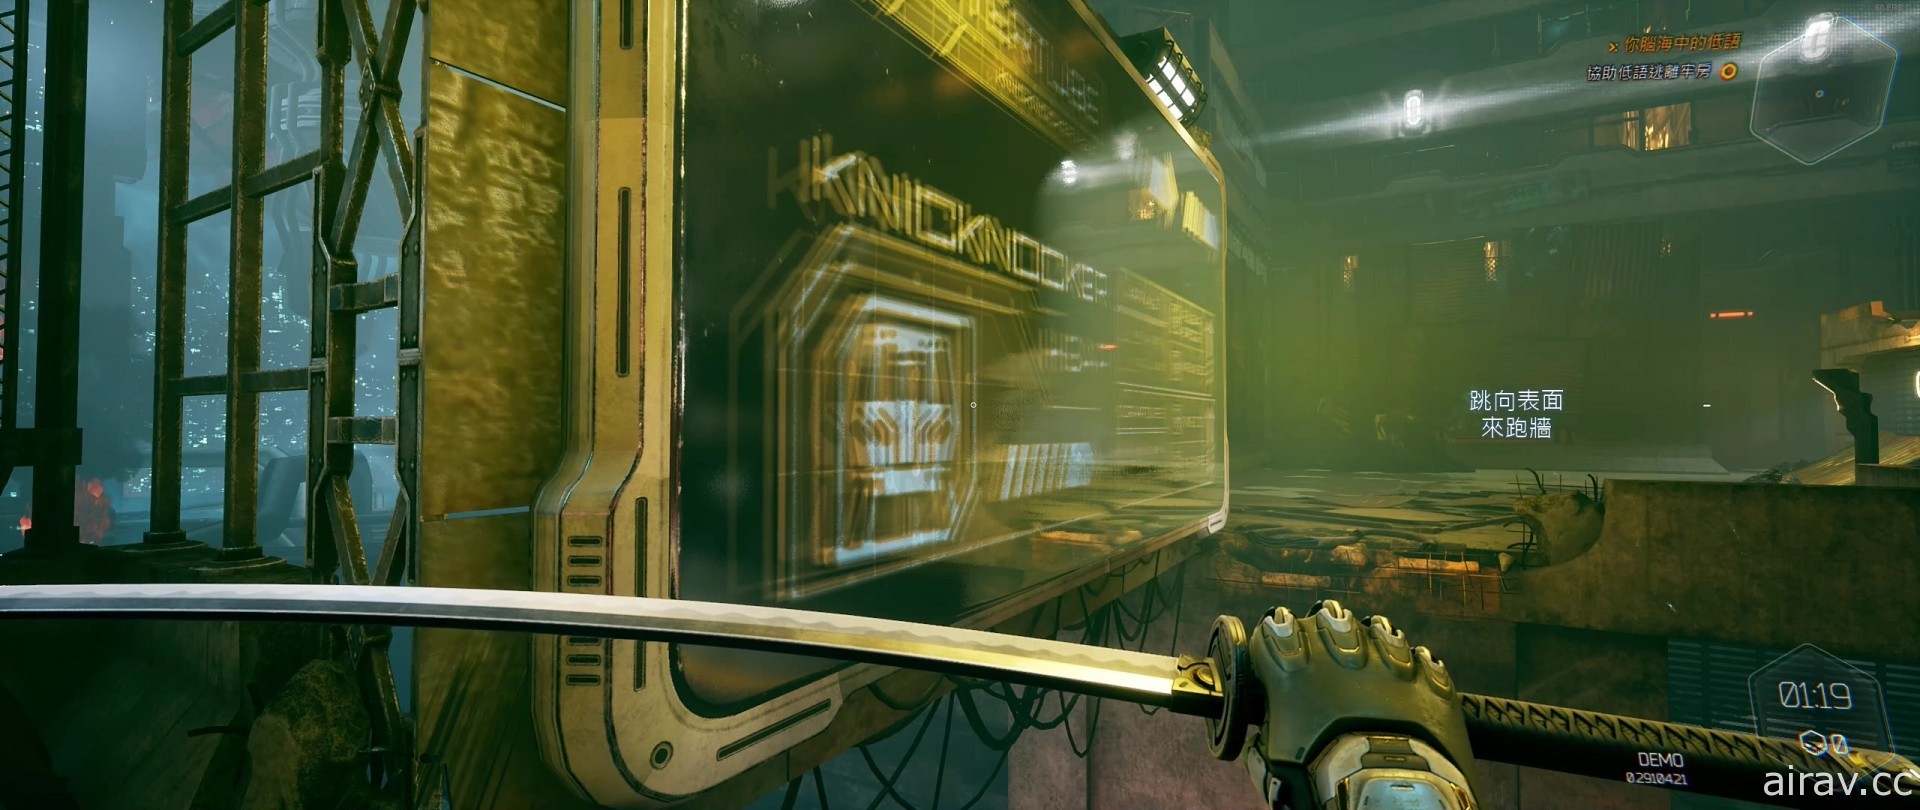 【試玩】賽博龐克動作遊戲《幽影行者》搶先體驗 化身帥氣機械忍者穿梭大樓間